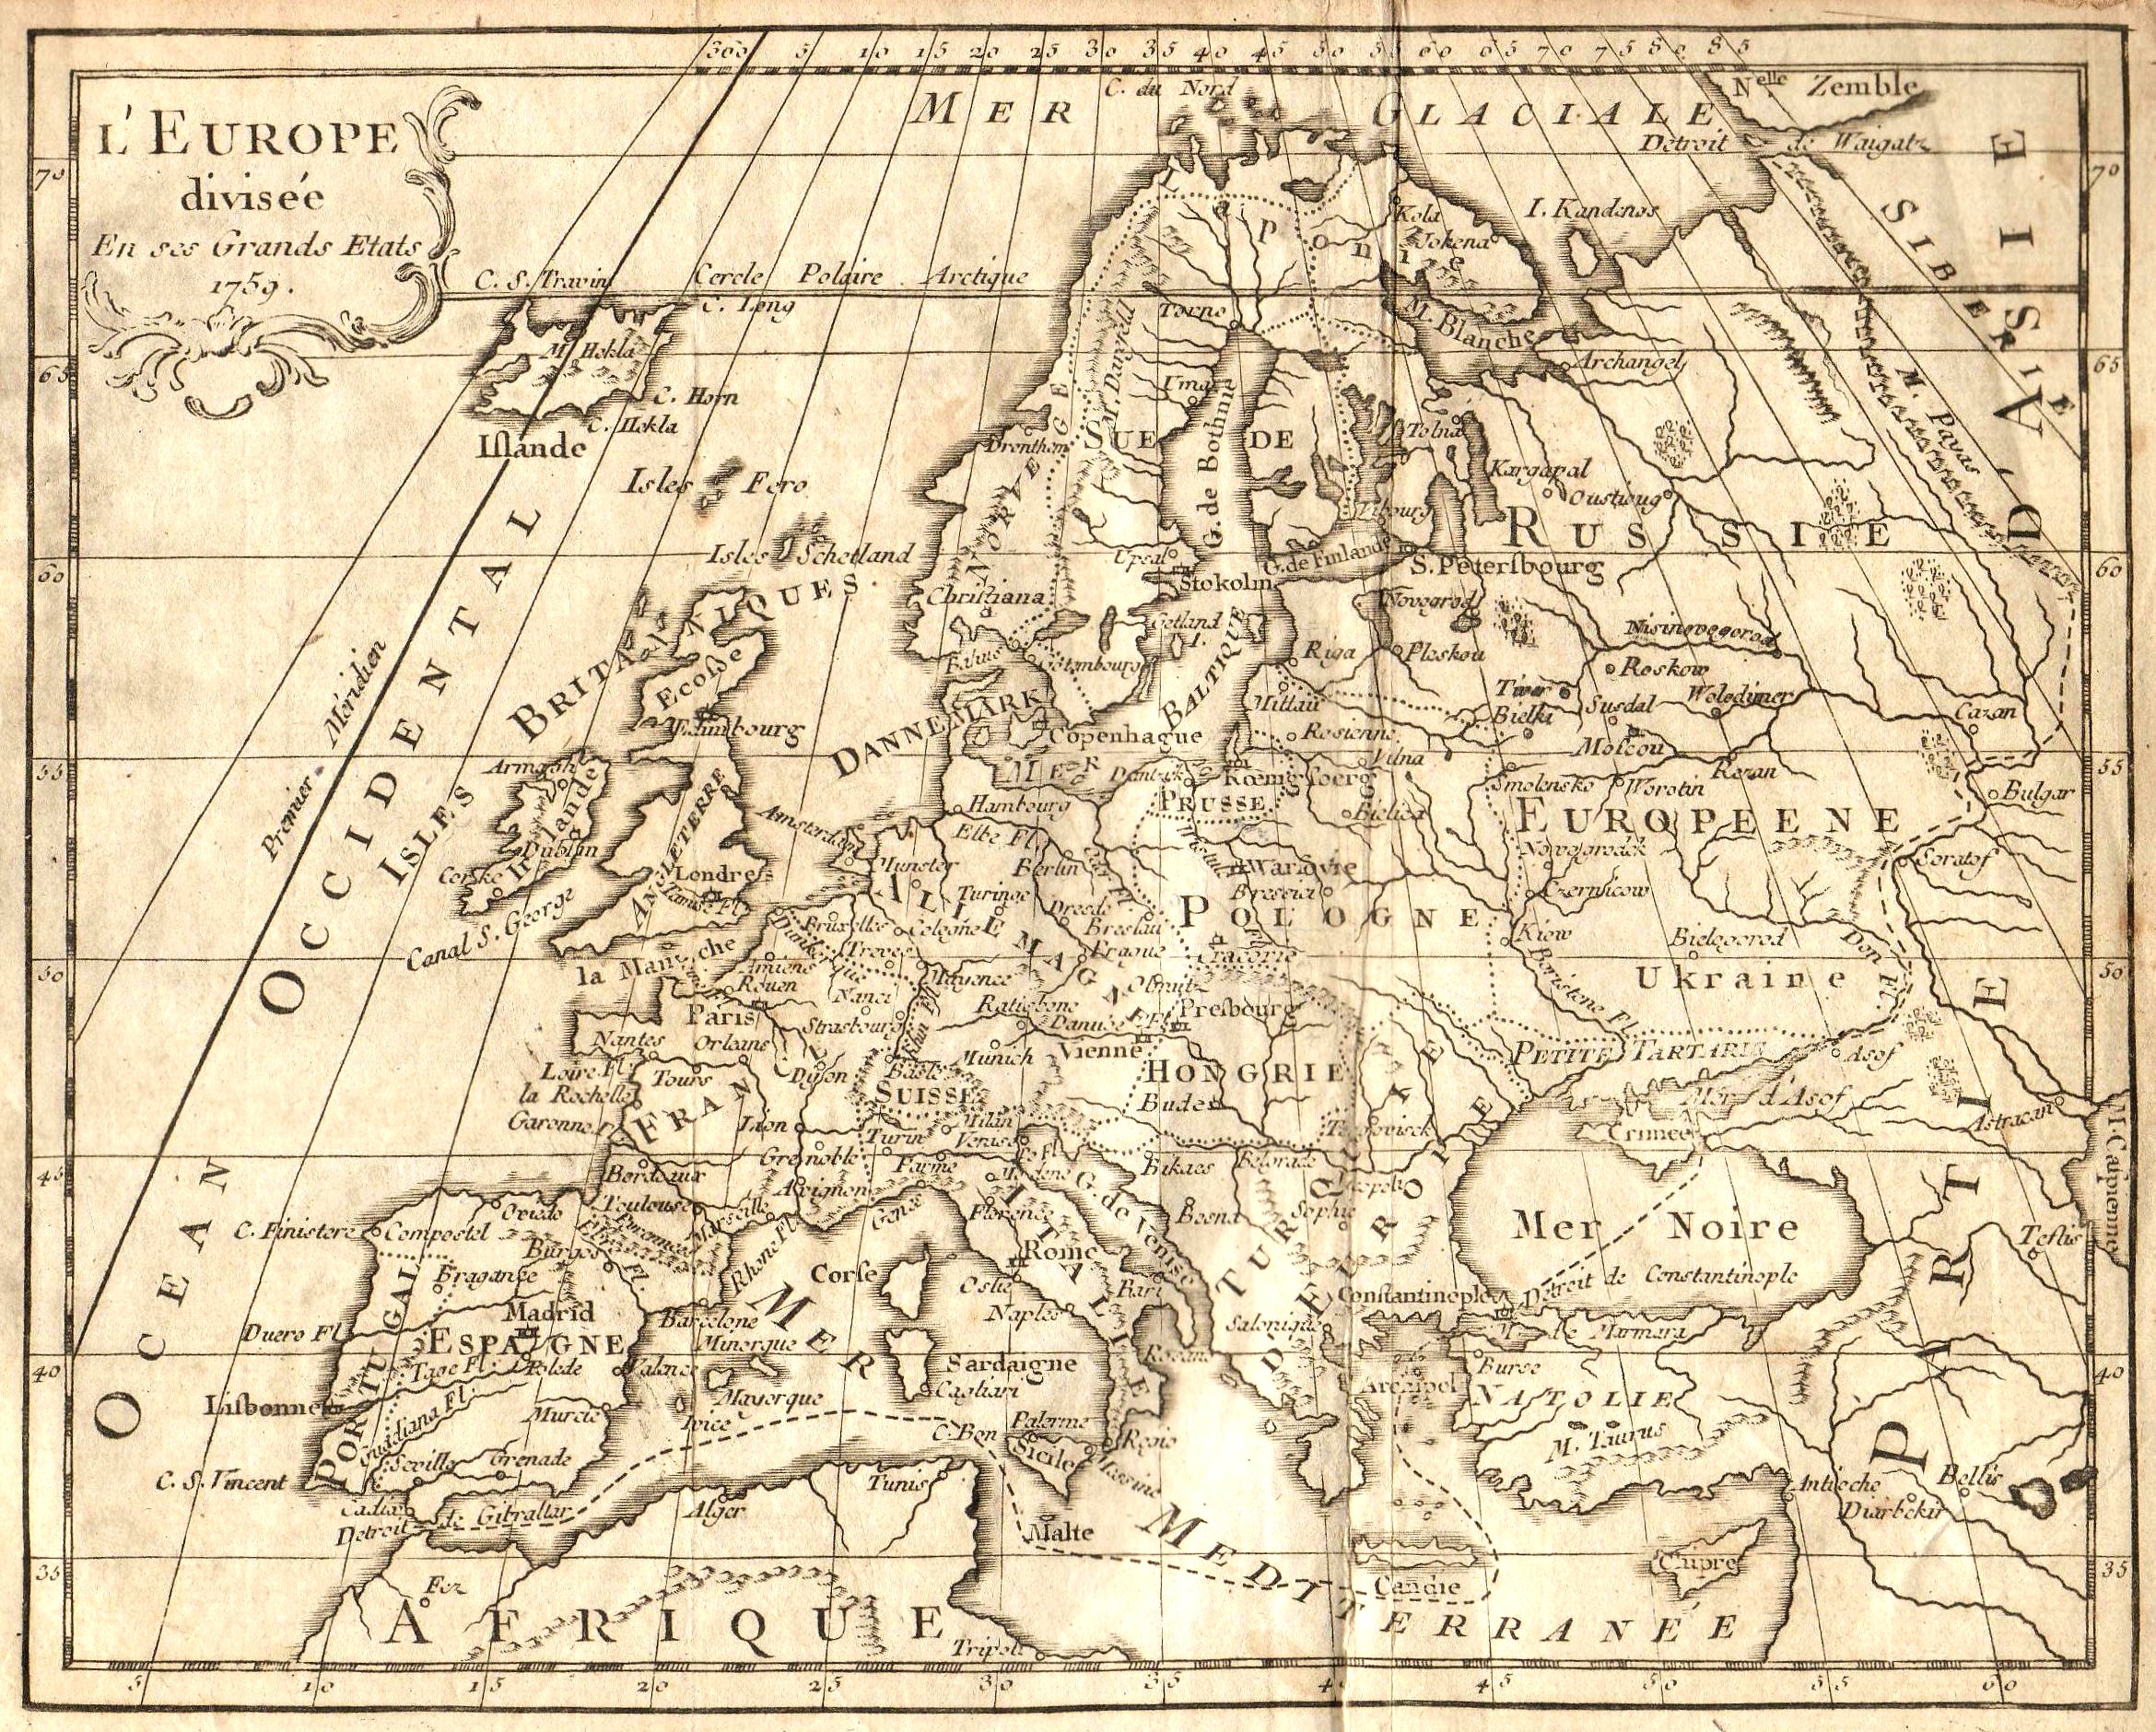 Europe carte géographique gratuite, carte géographique muette